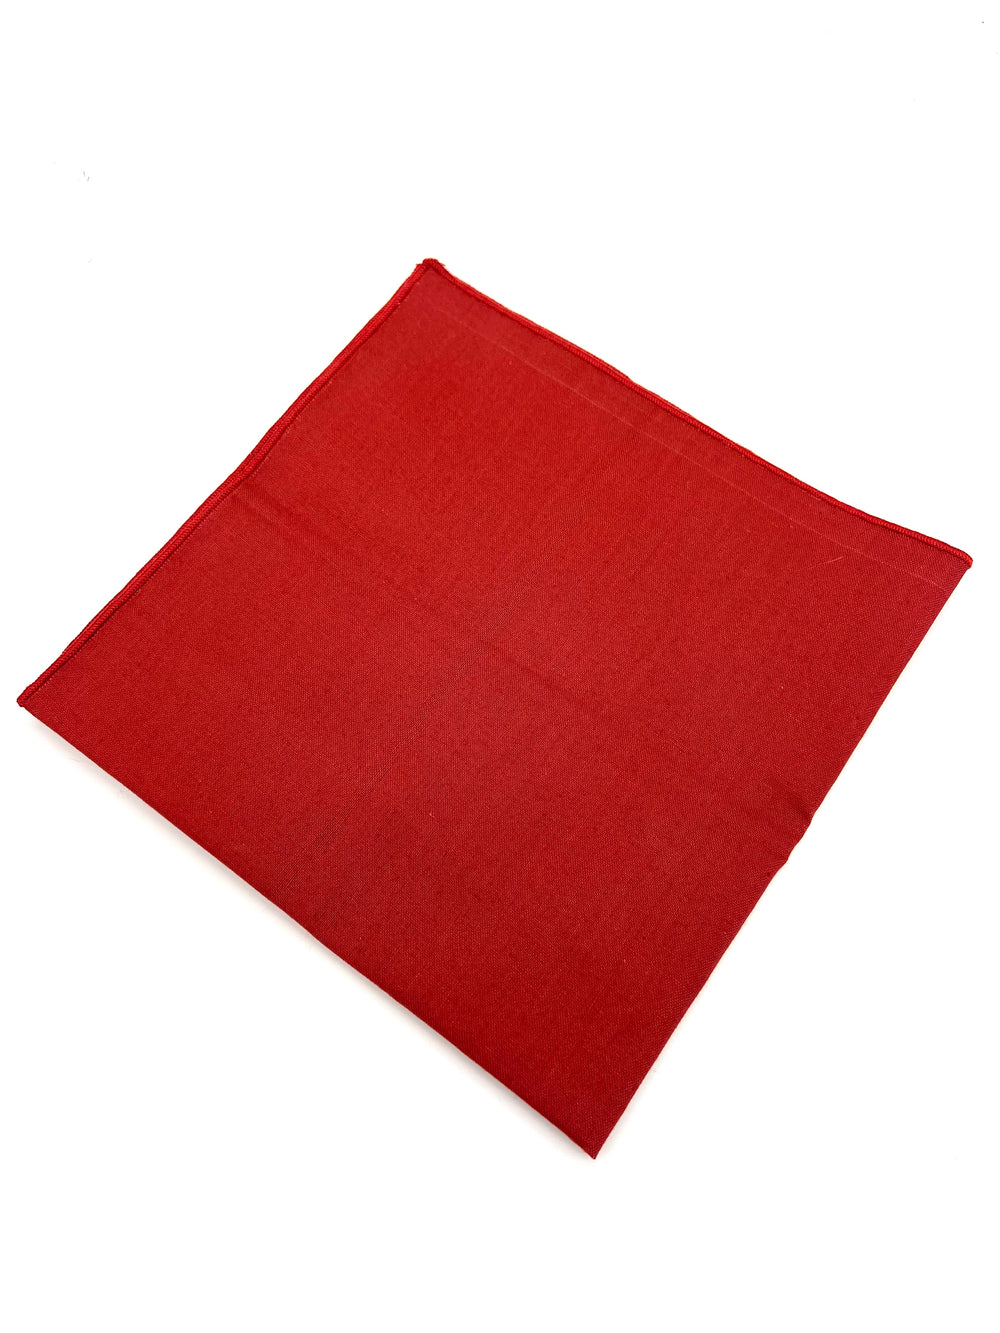 Solid Deep Red Handkerchief